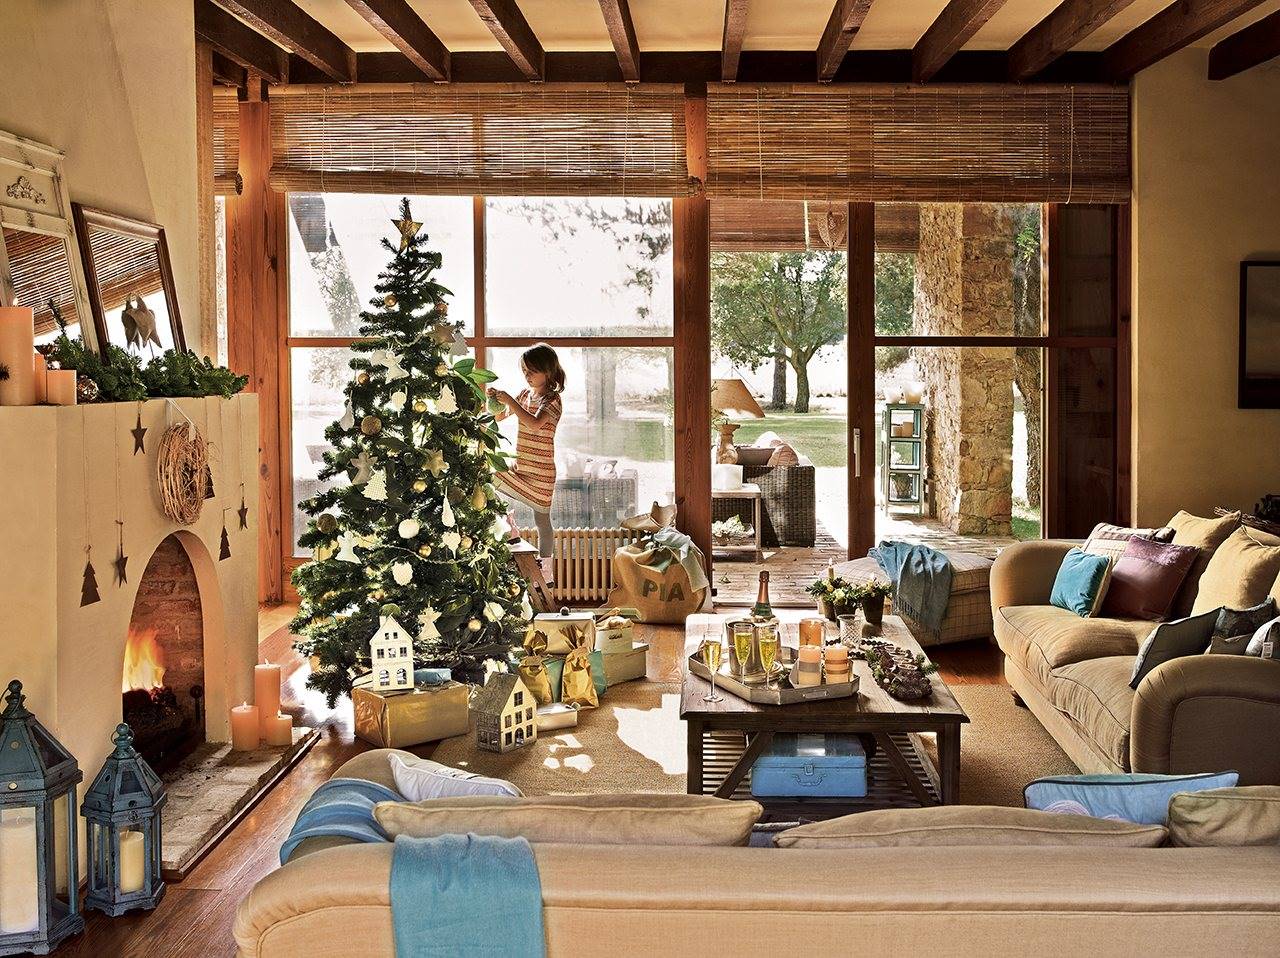 salon rustico con nina decorando el abeto de navidad 1280x958